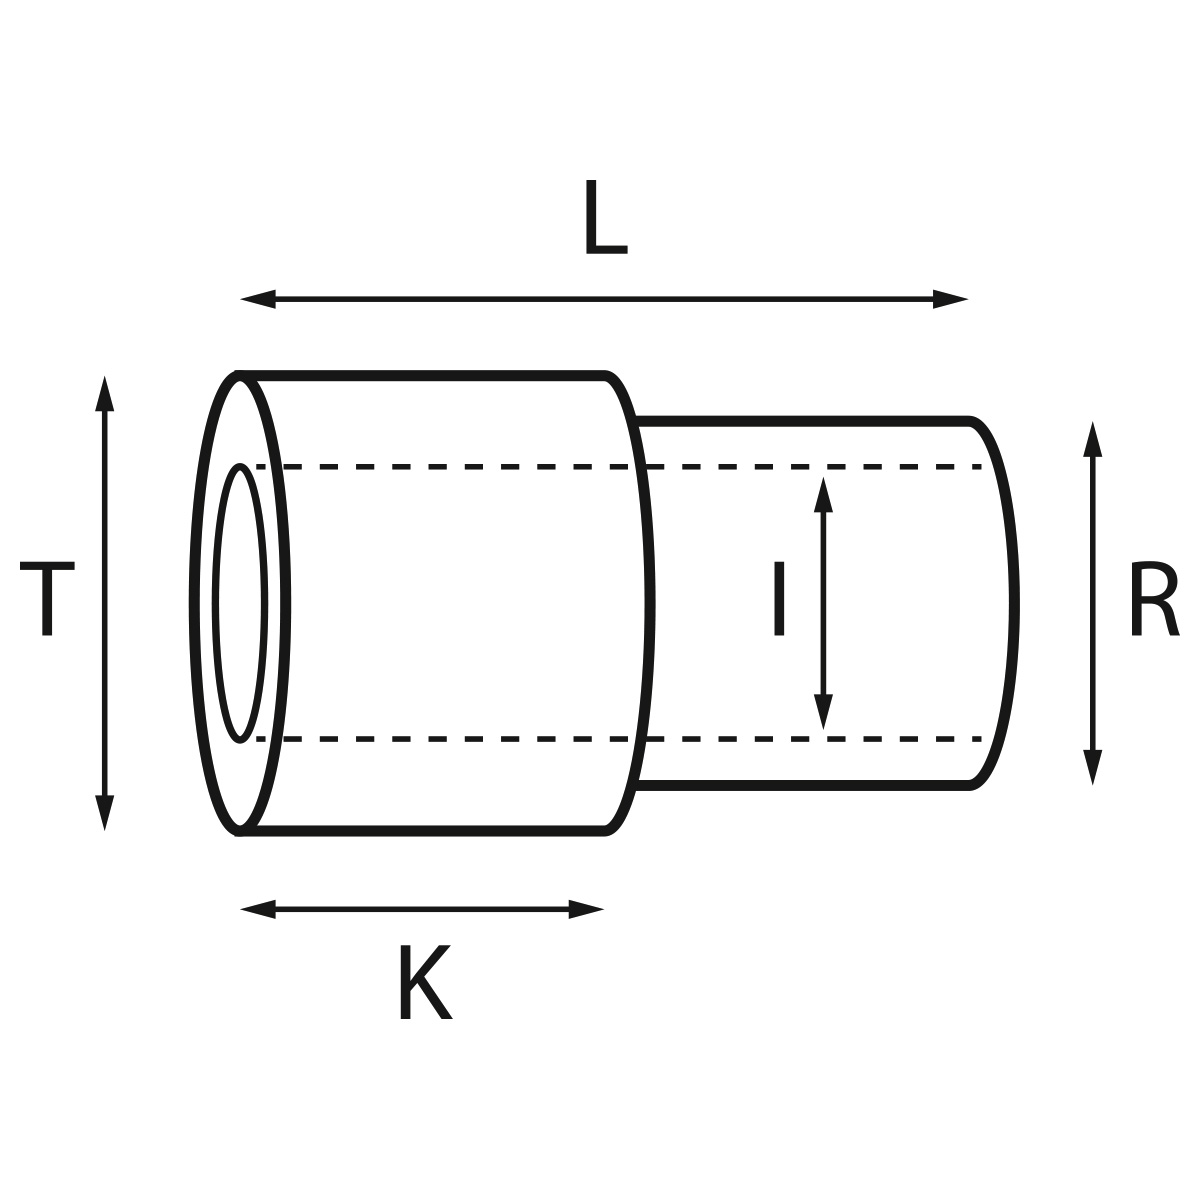 Gehäusetube Typ AS 13826, Tubus Ø 2 mm, Gesamtlänge 2,8 mm,  Innen Ø 1,5 mm, für wasserdichte Kronen